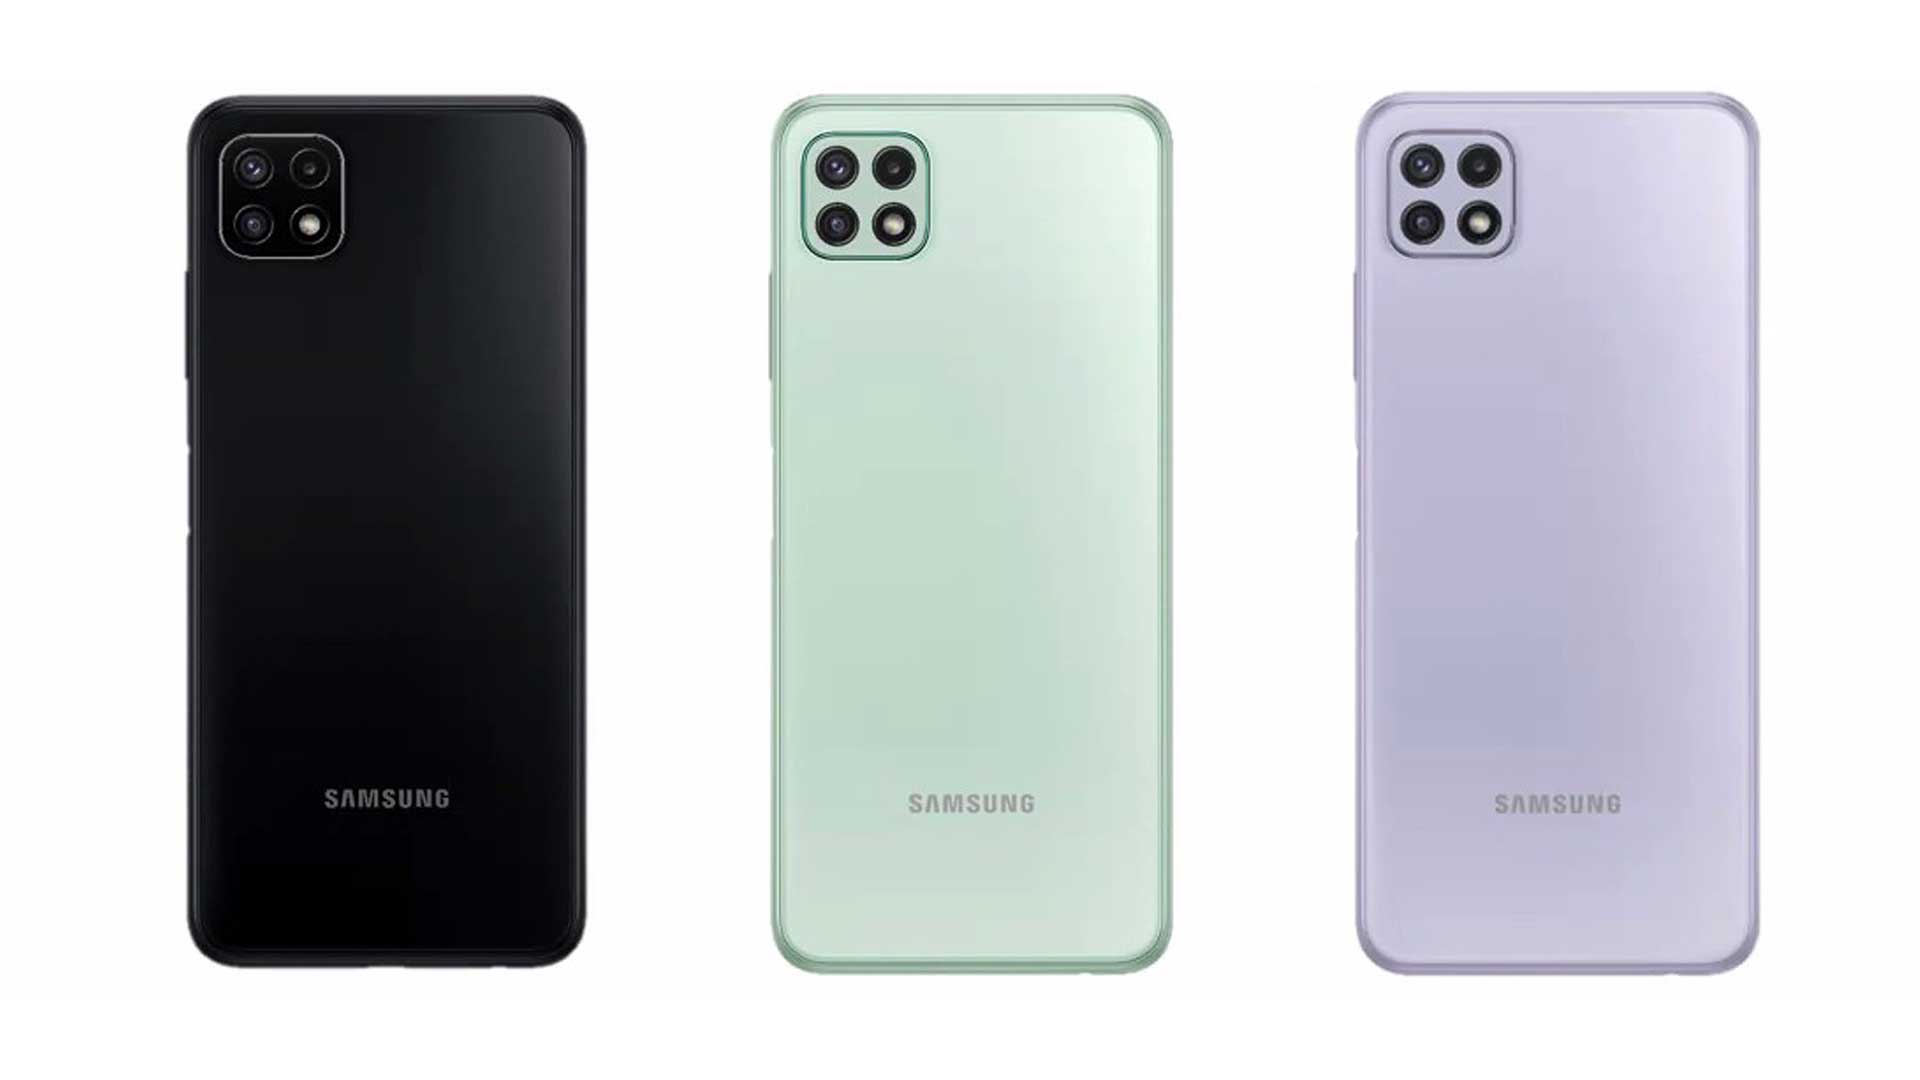 เปิดตัว Samsung Galaxy A22 มือถือ 5G กล้อง 48 MP จอลื่น 90 Hz ราคาไม่ถึงหมื่น